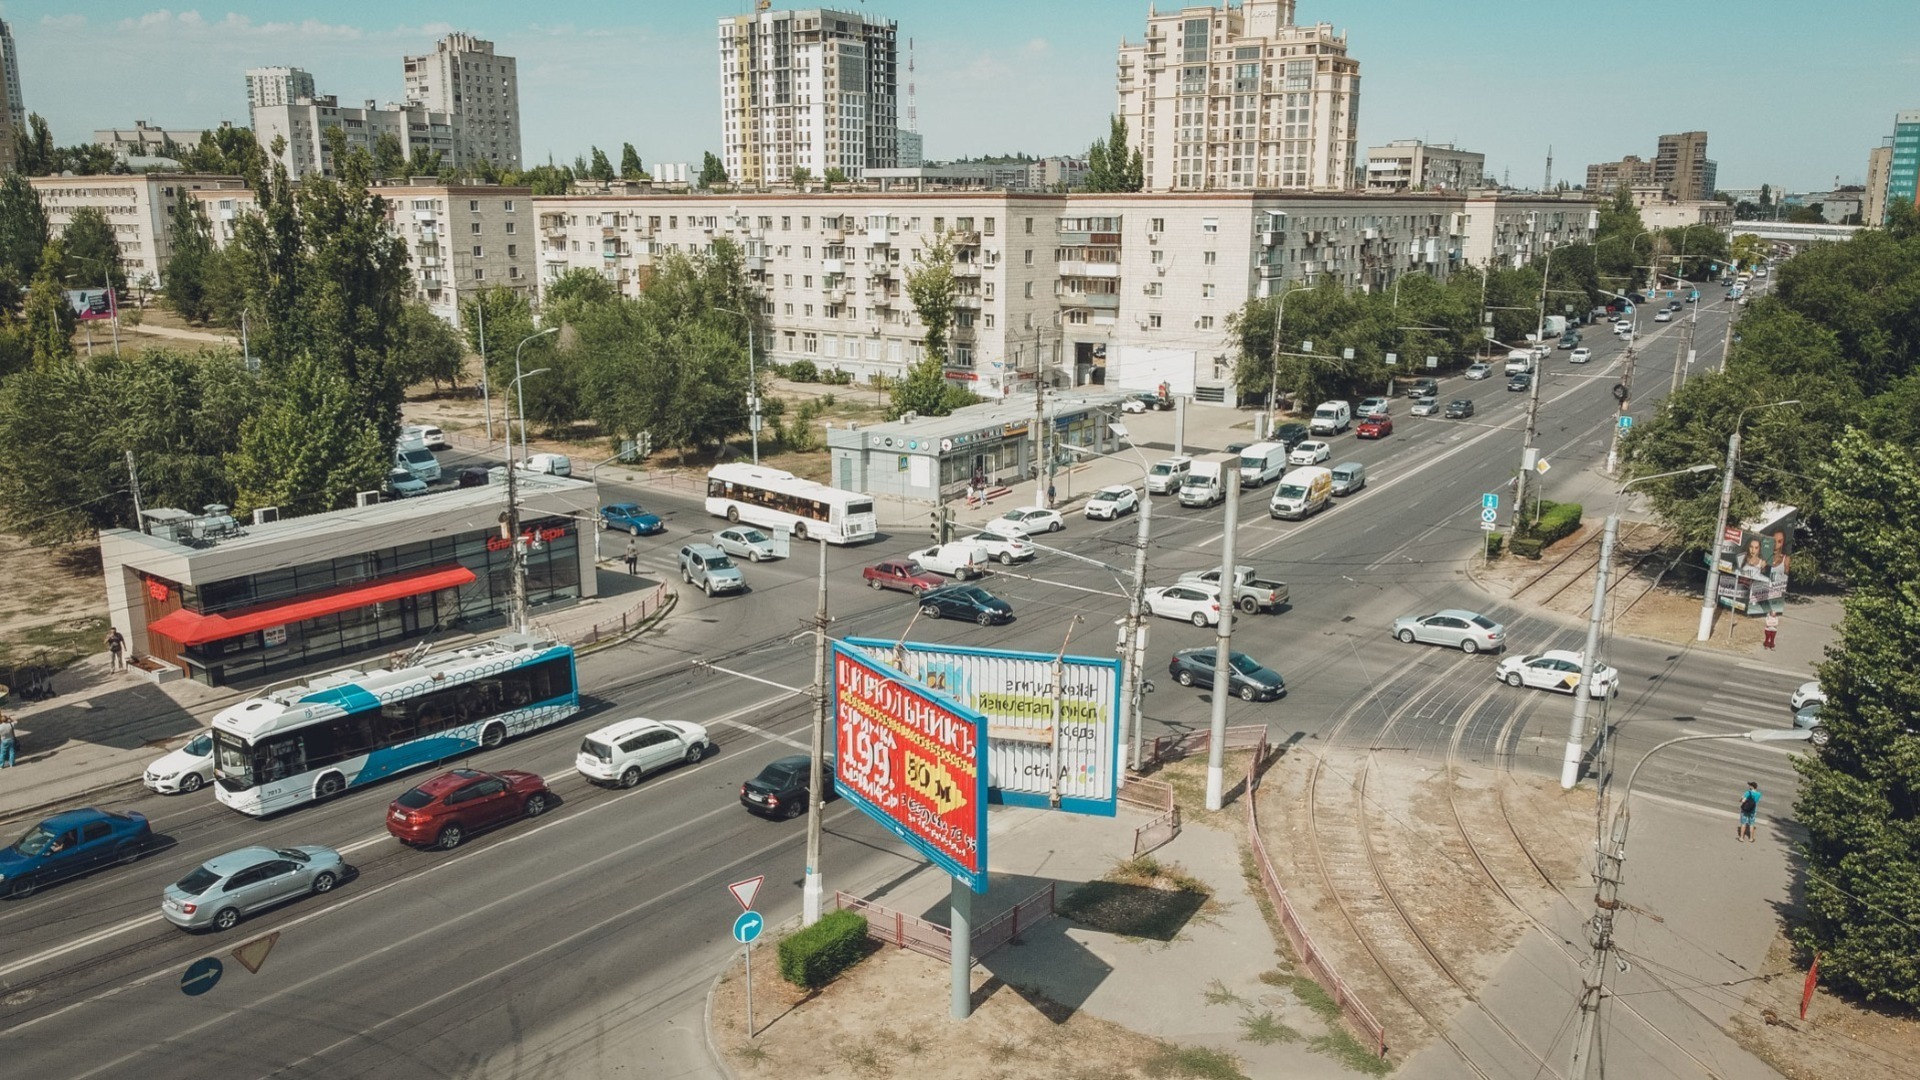 Суд над убийцами айтишника и продление трамвайных путей в Волгограде